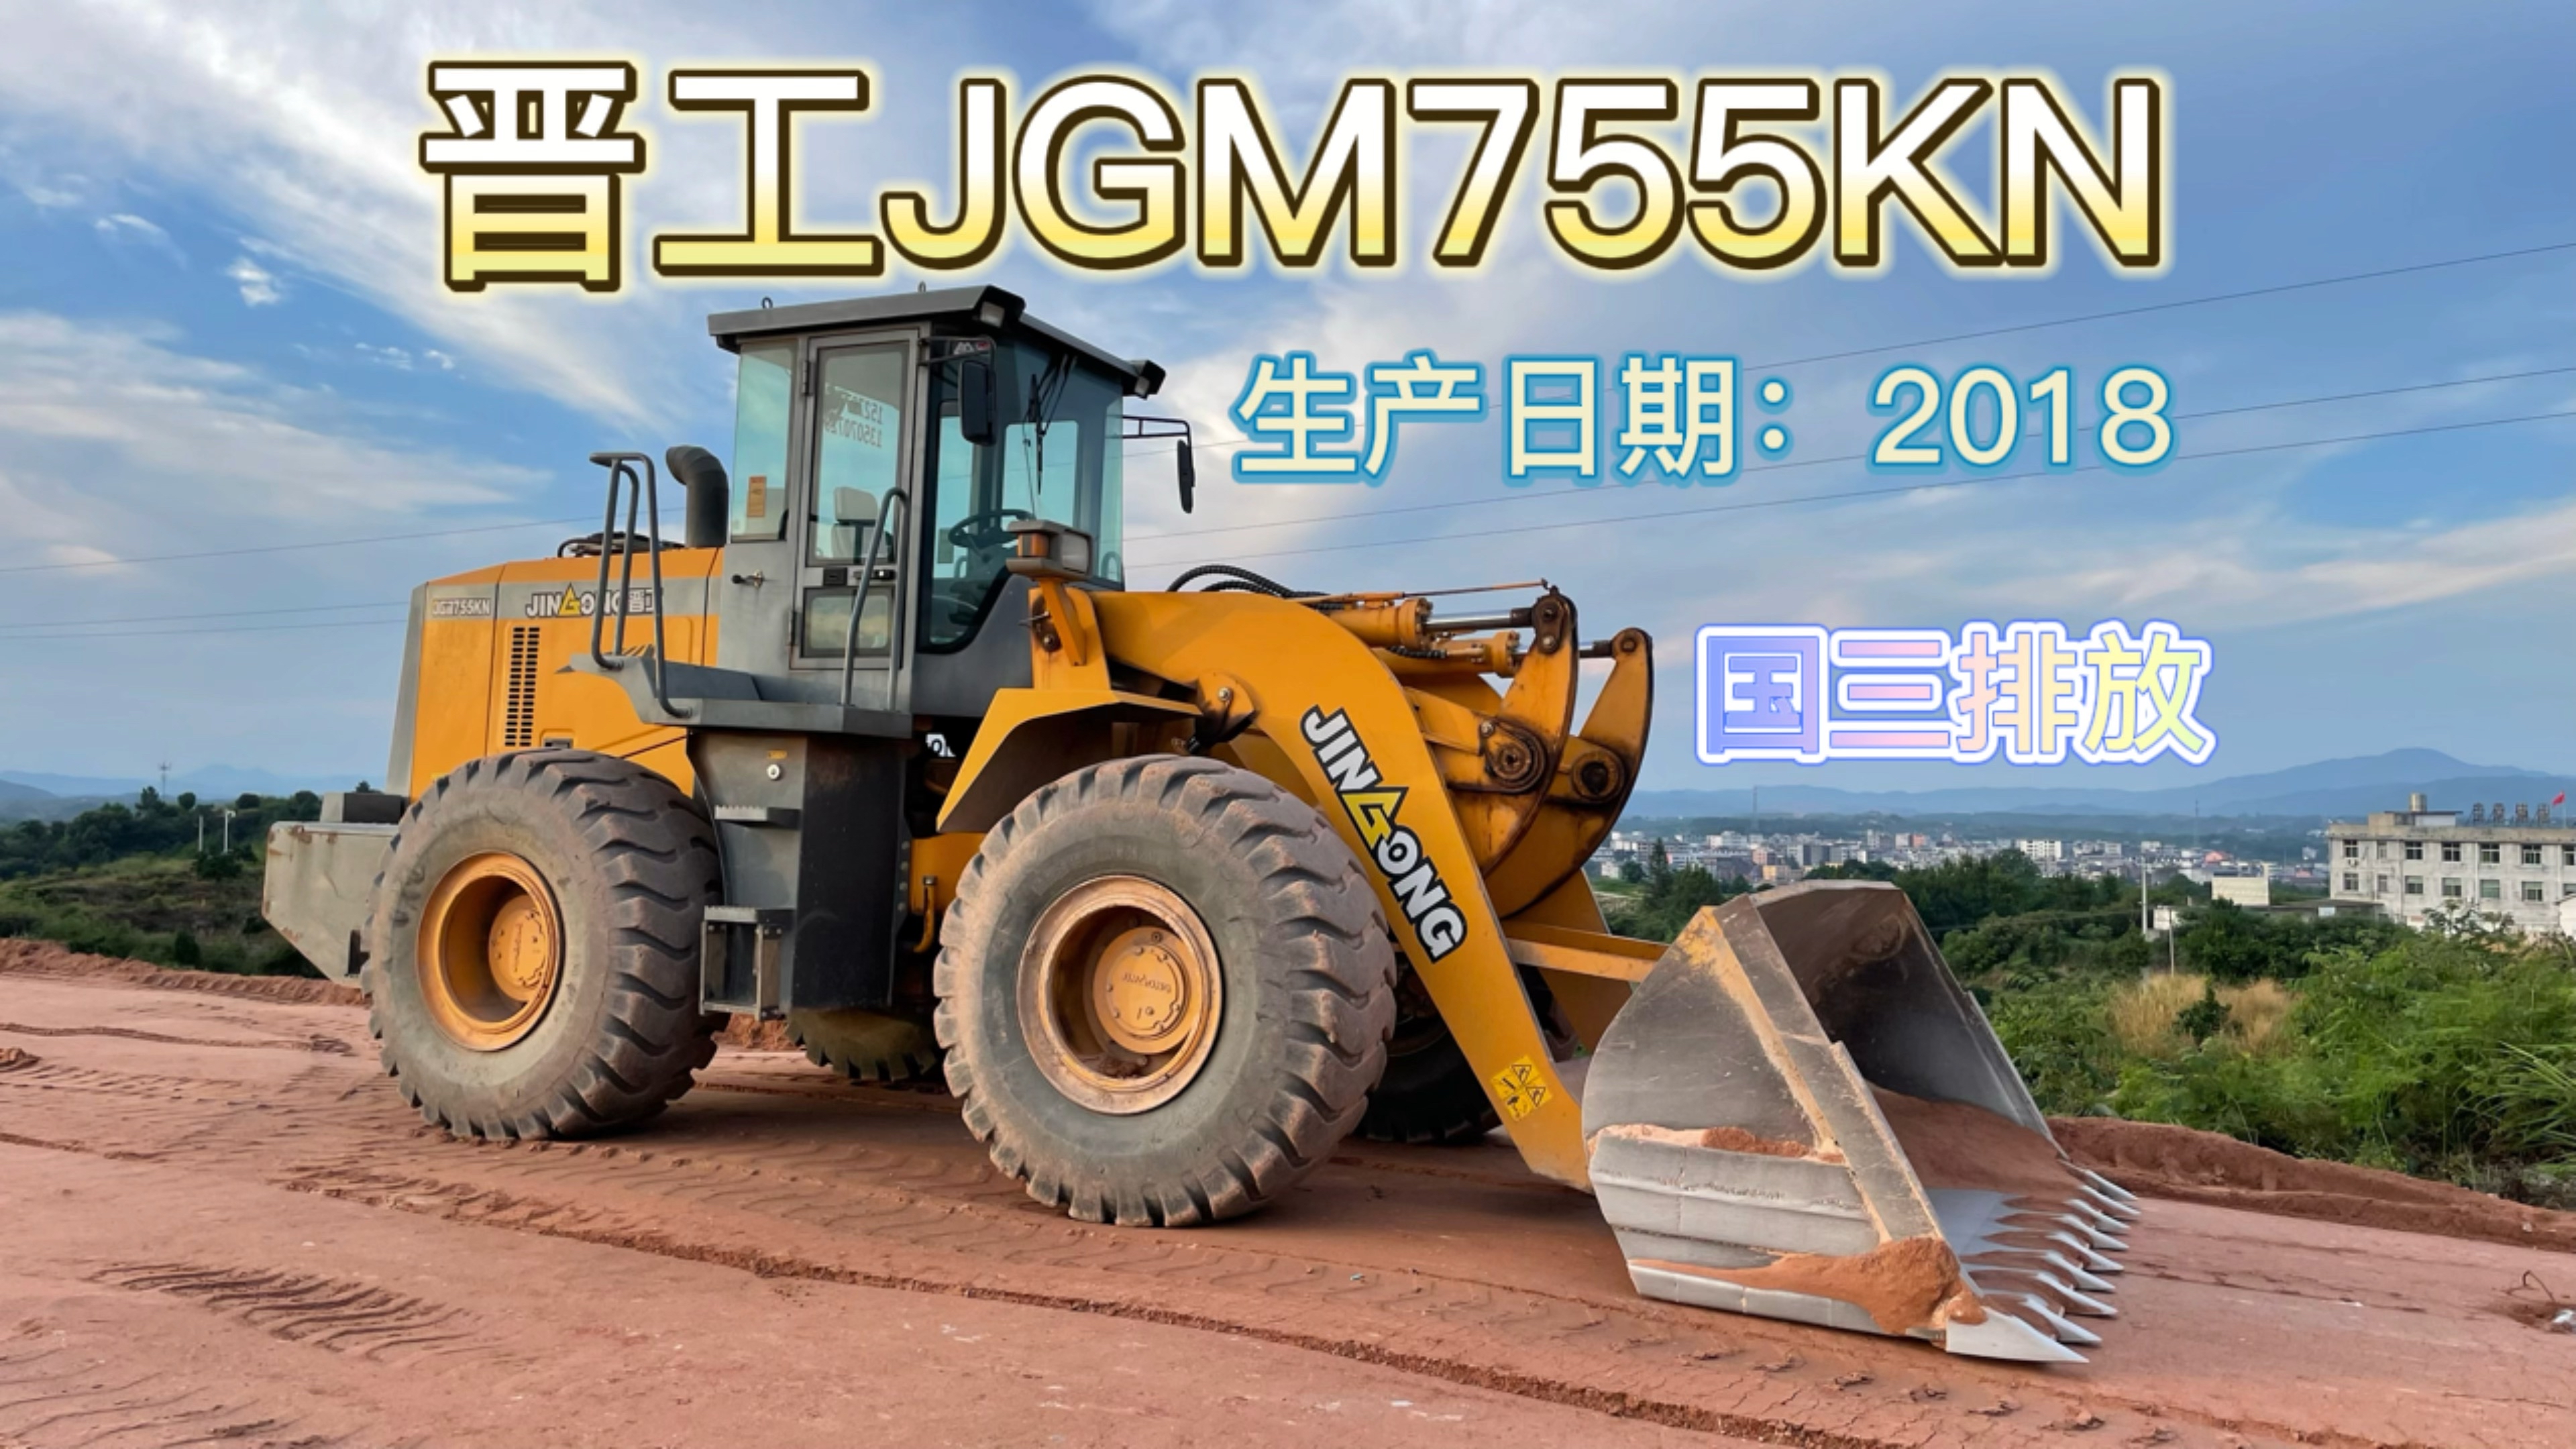 【视频说车】晋工JGM755KN轮式装载机